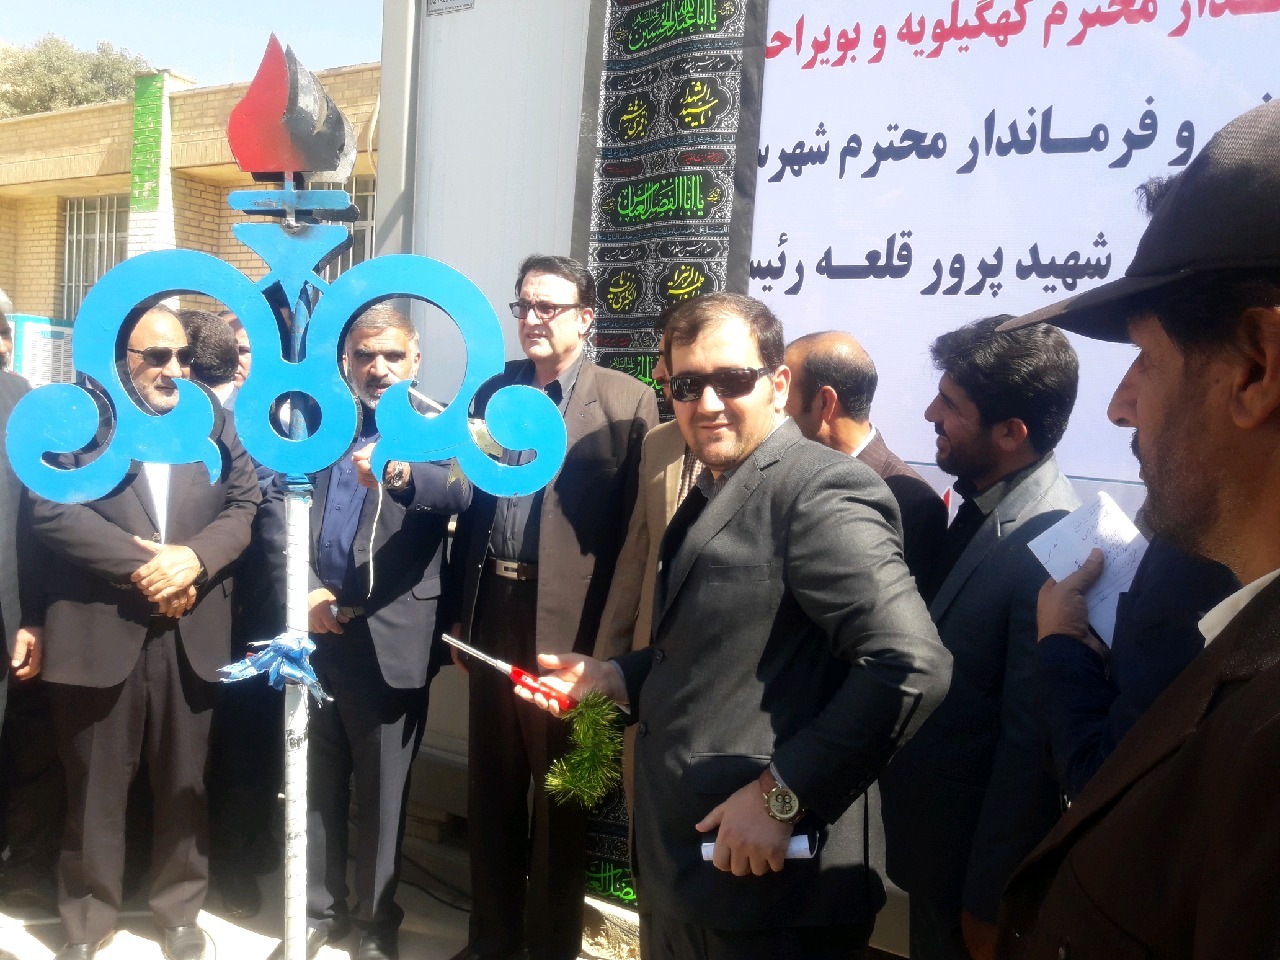 بهره برداری از طرح گازرسانی قلعه رئیسی با حضور معاون وزیر نفت